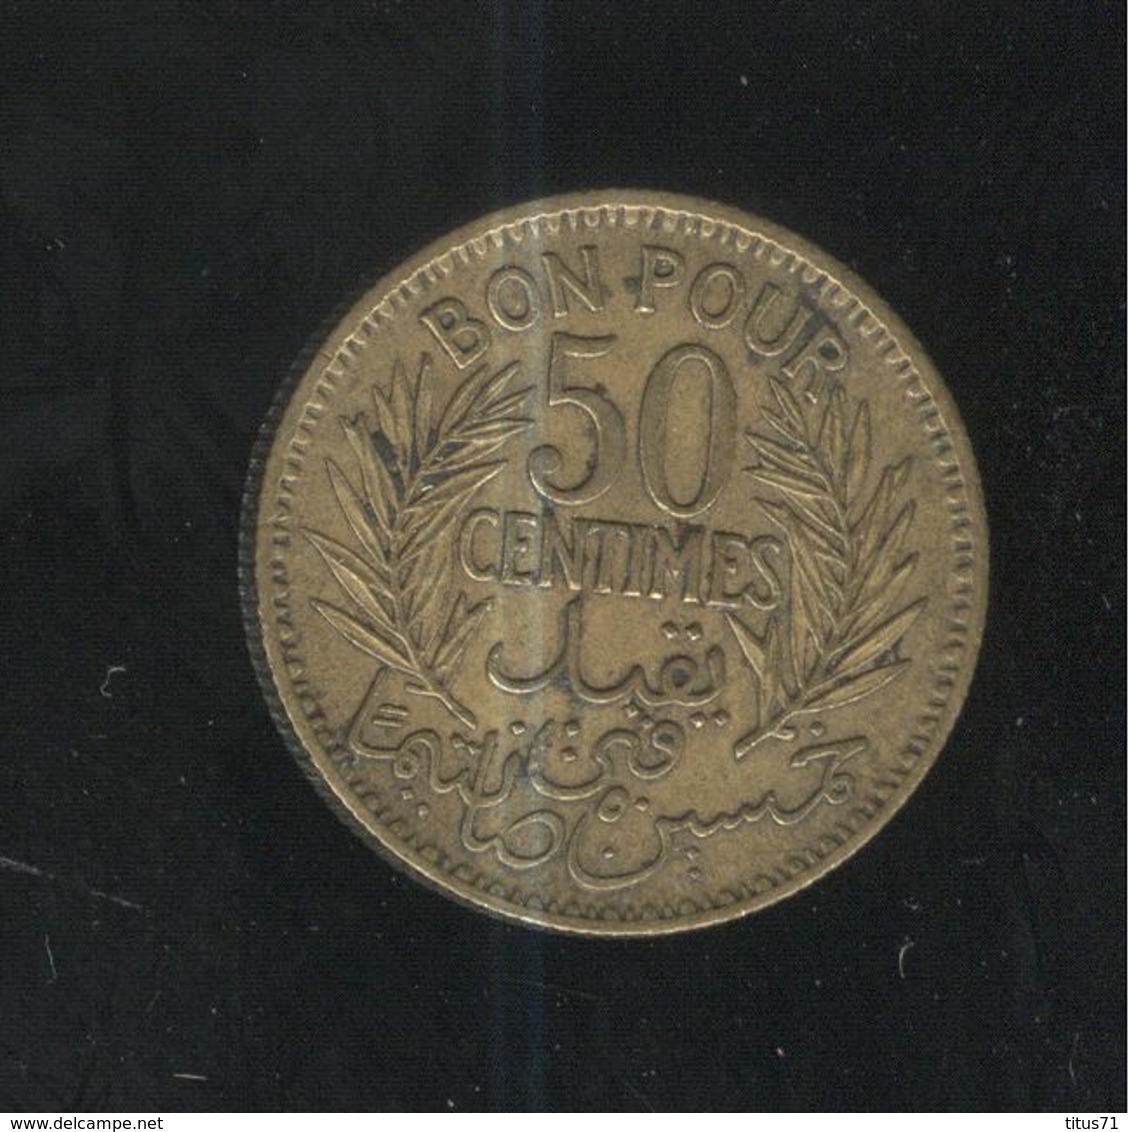 50 Centimes Tunisie 1941 - Tunisie